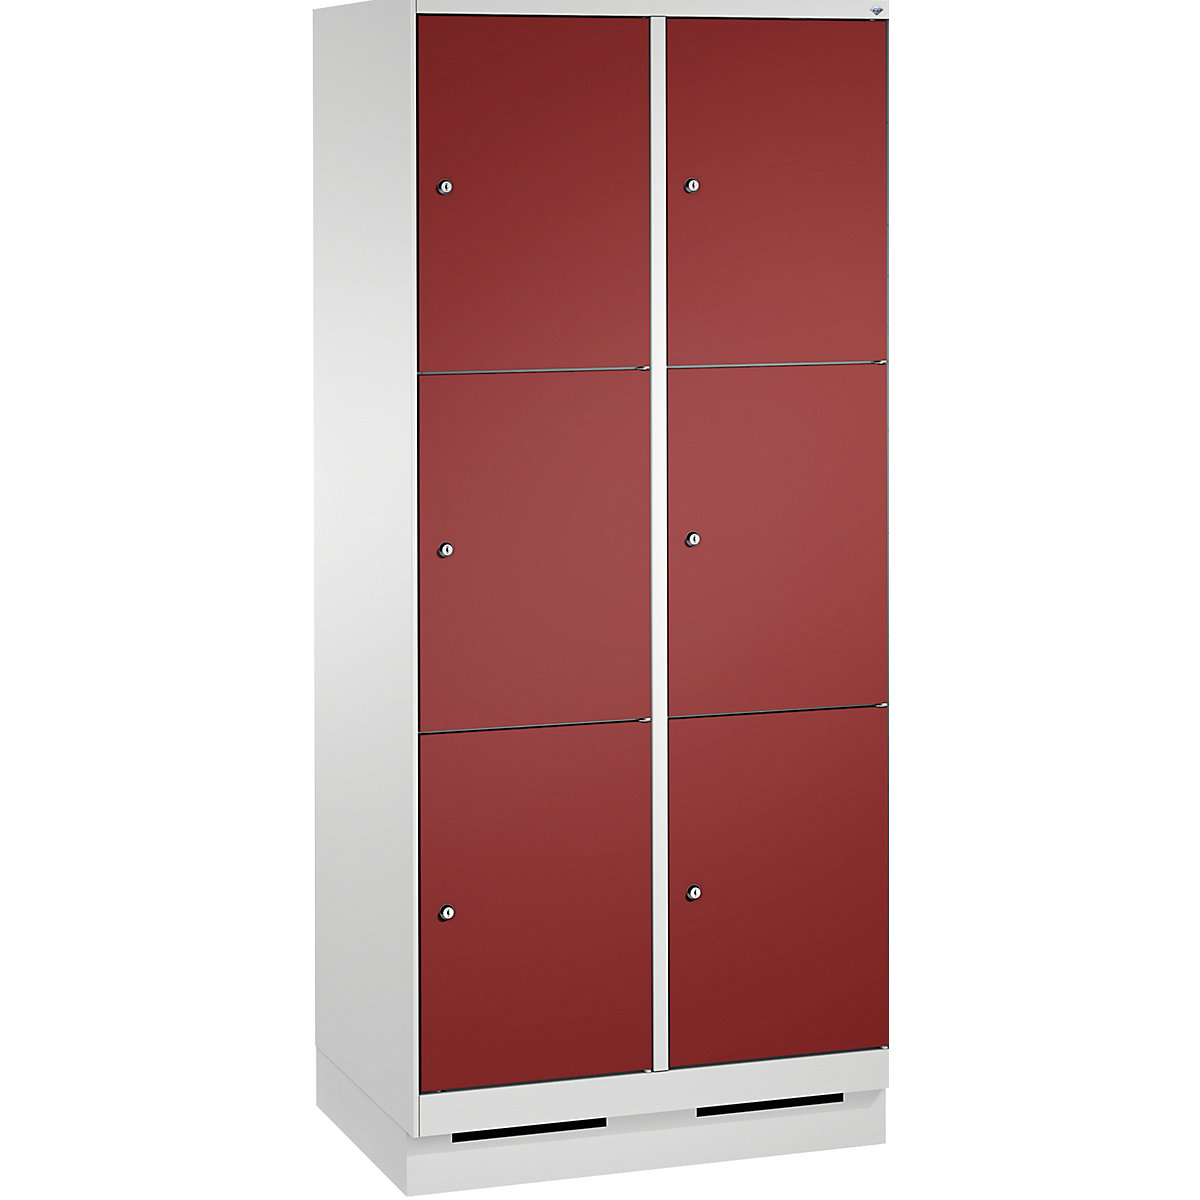 Armoire à casiers sur socle EVOLO – C+P, 2 compartiments, 3 casiers chacun, largeur compartiments 400 mm, gris clair / rouge rubis-10